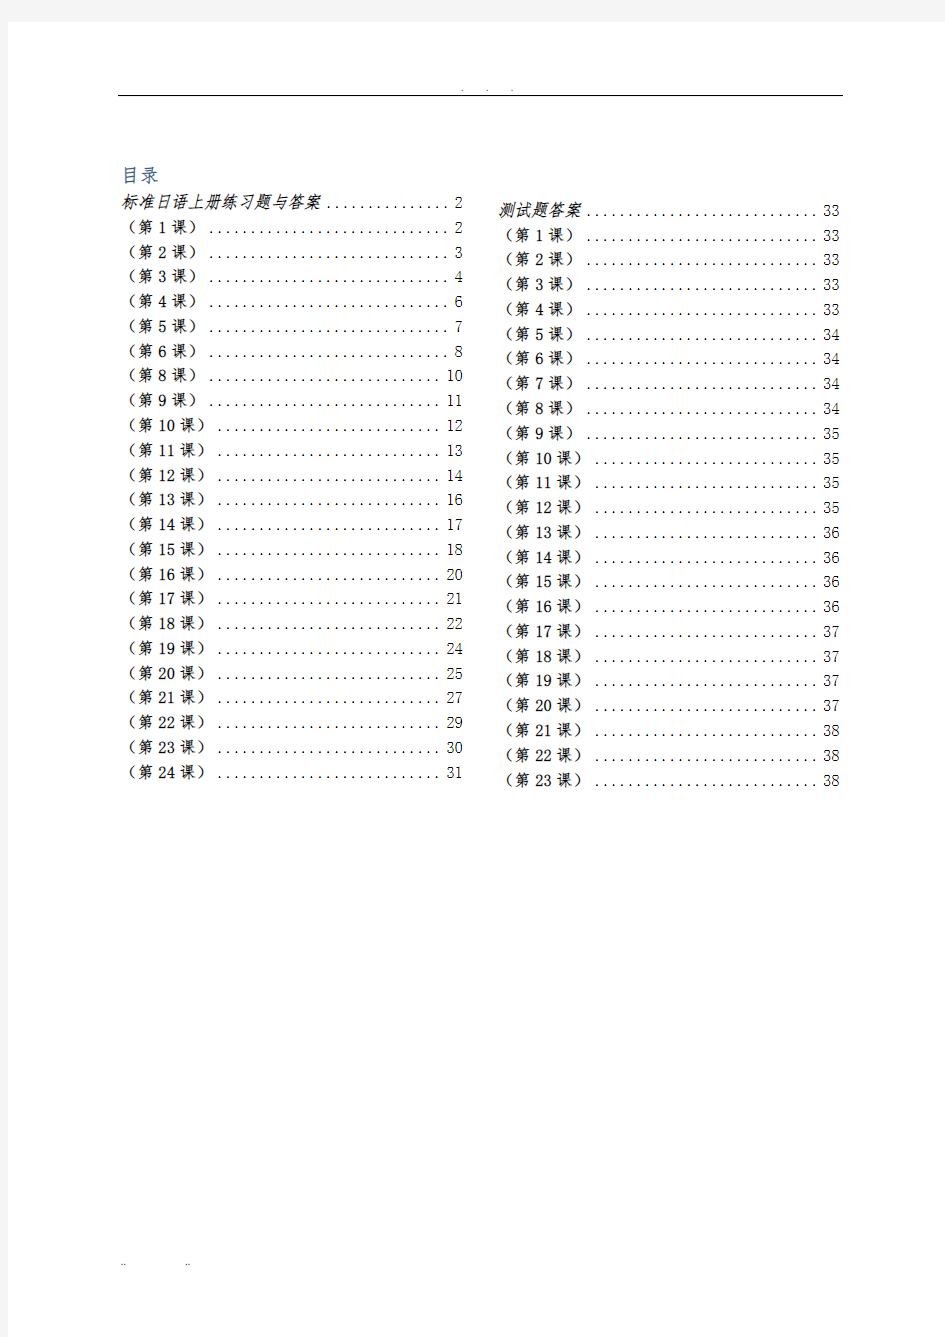 标准日语初级(上册)练习题与答案(A4打印版)